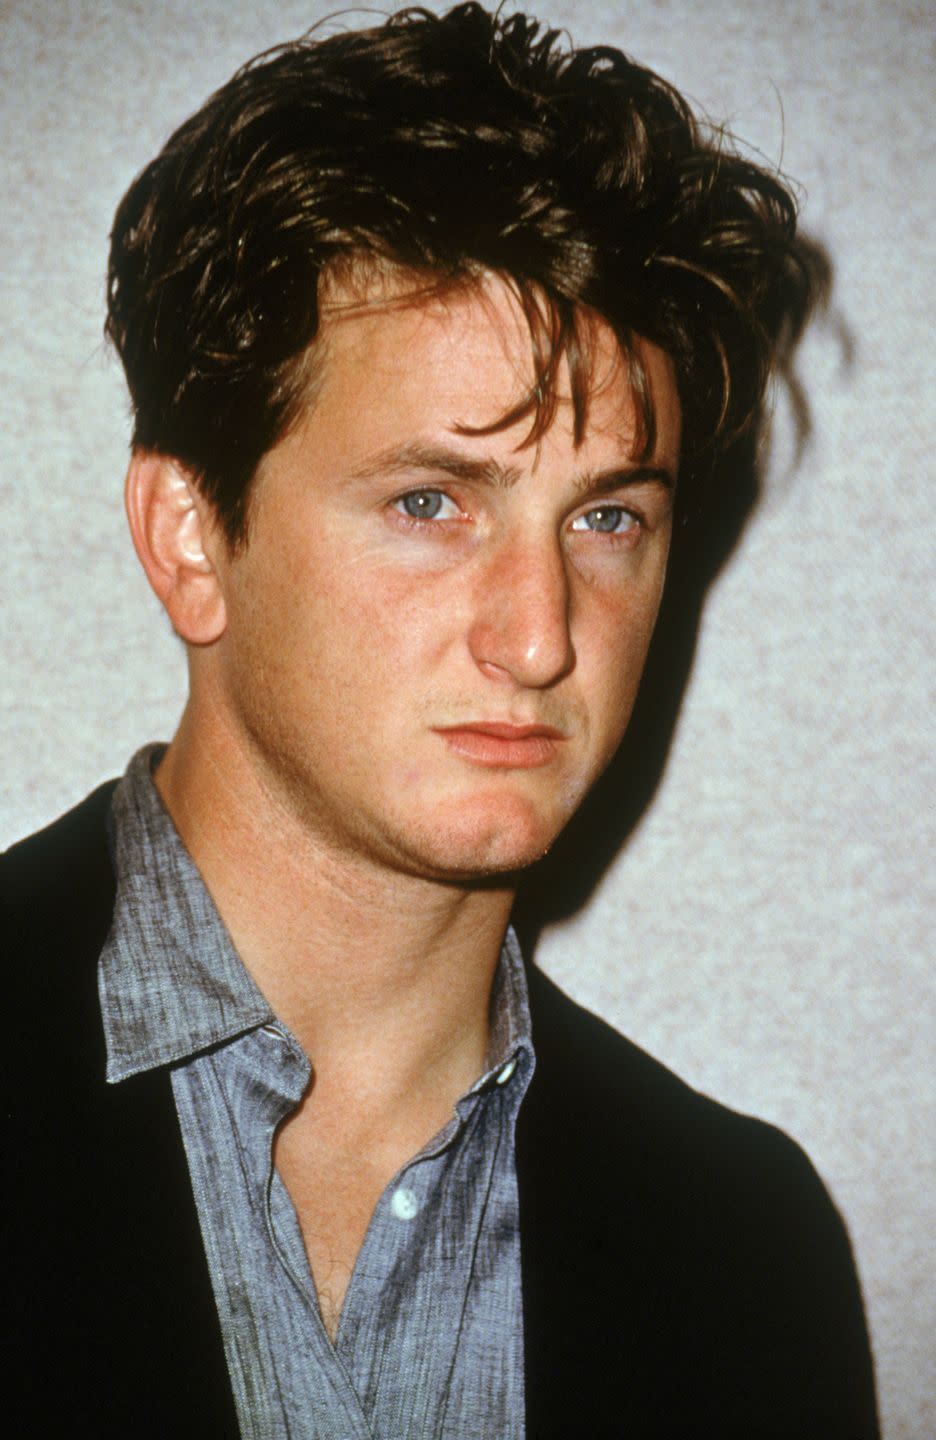 Then: Sean Penn